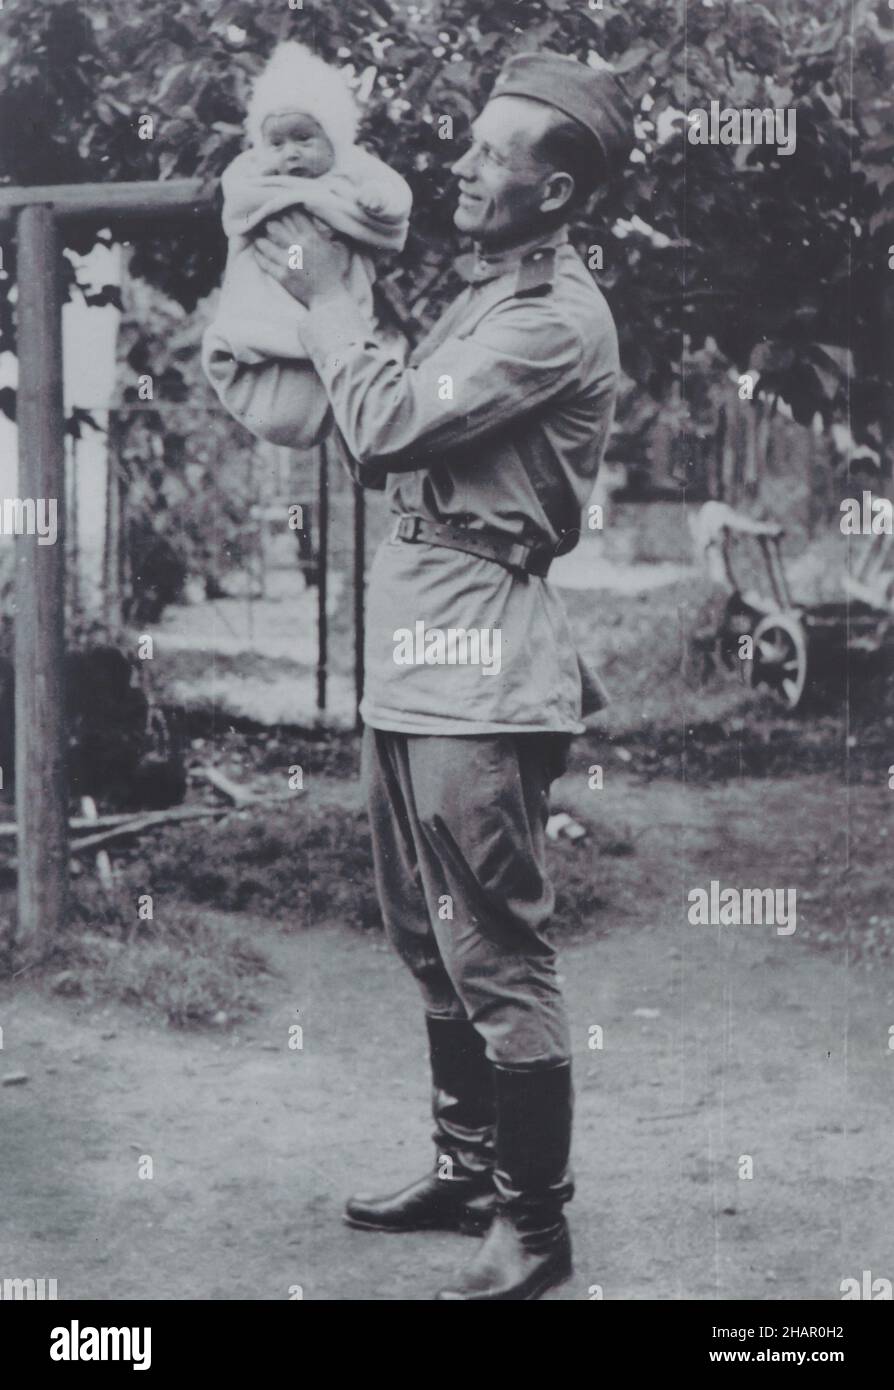 Soldato dell'esercito rosso che tiene un bambino raffigurato nella fotografia d'epoca in bianco e nero da un fotografo sconosciuto datato probabilmente dal 1945 e preso probabilmente in Cecoslovacchia. Foto Stock